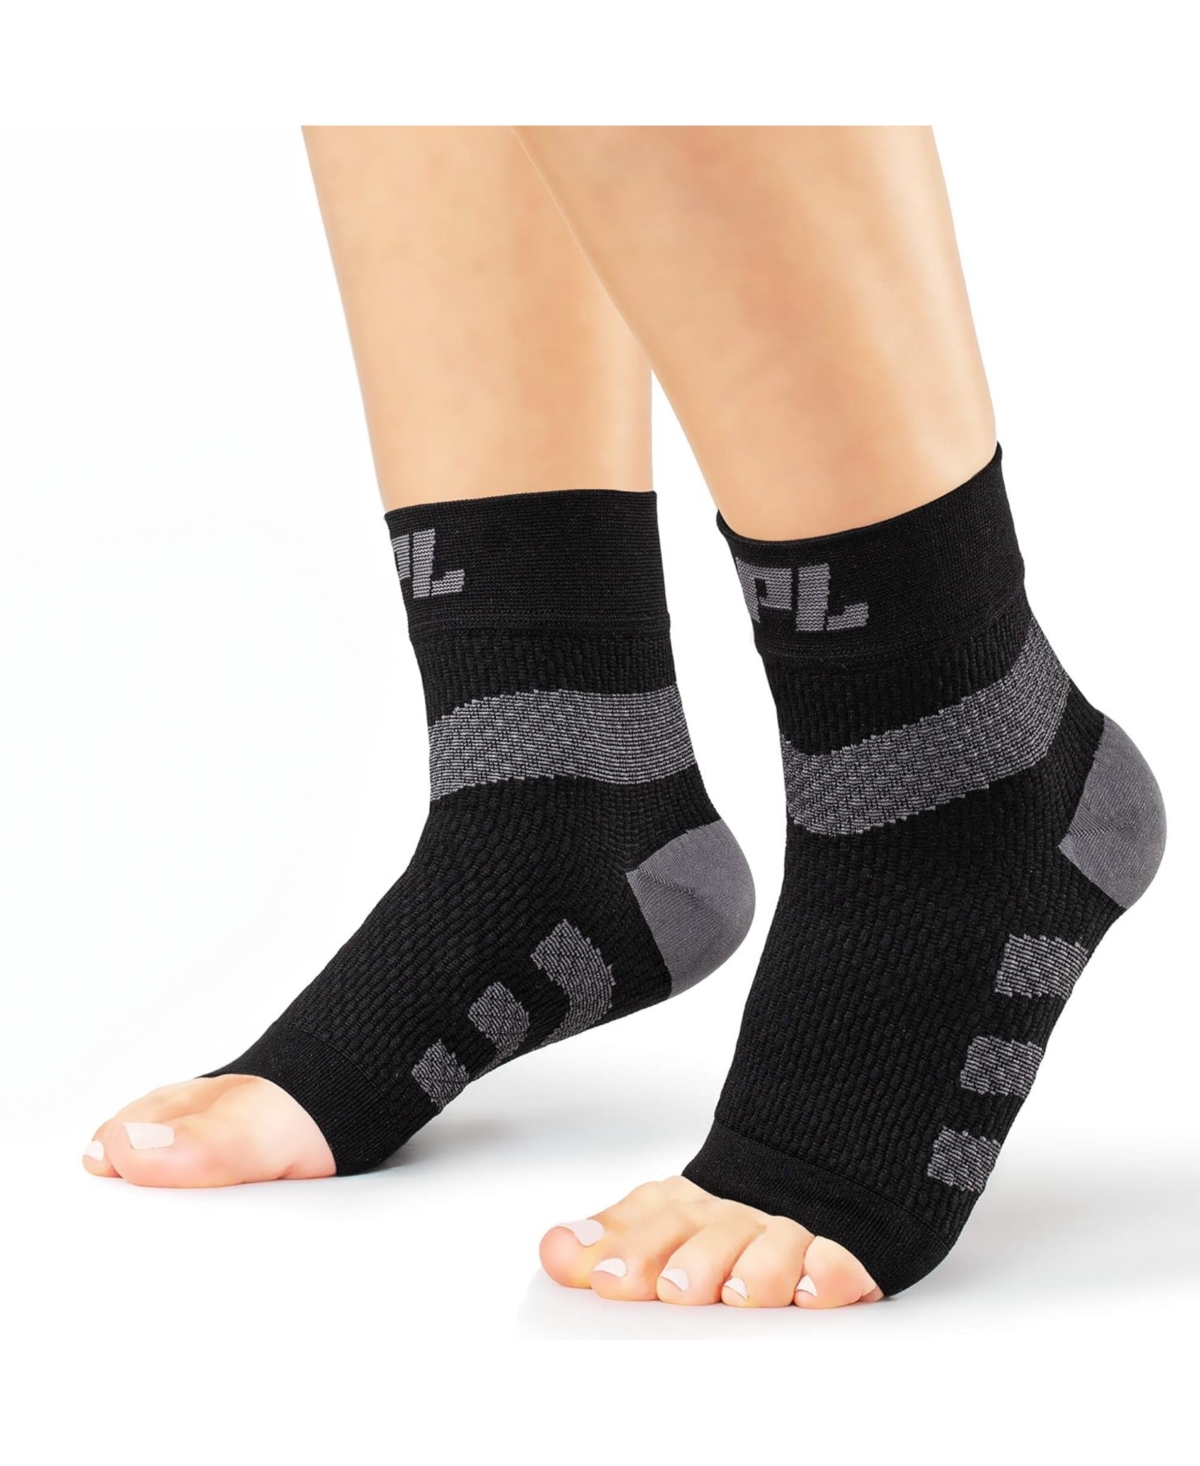 Large Orthopedic Feet Brace Women & Men: for Arthritis, Tendinitis - 1 Pair - Black ( pair)